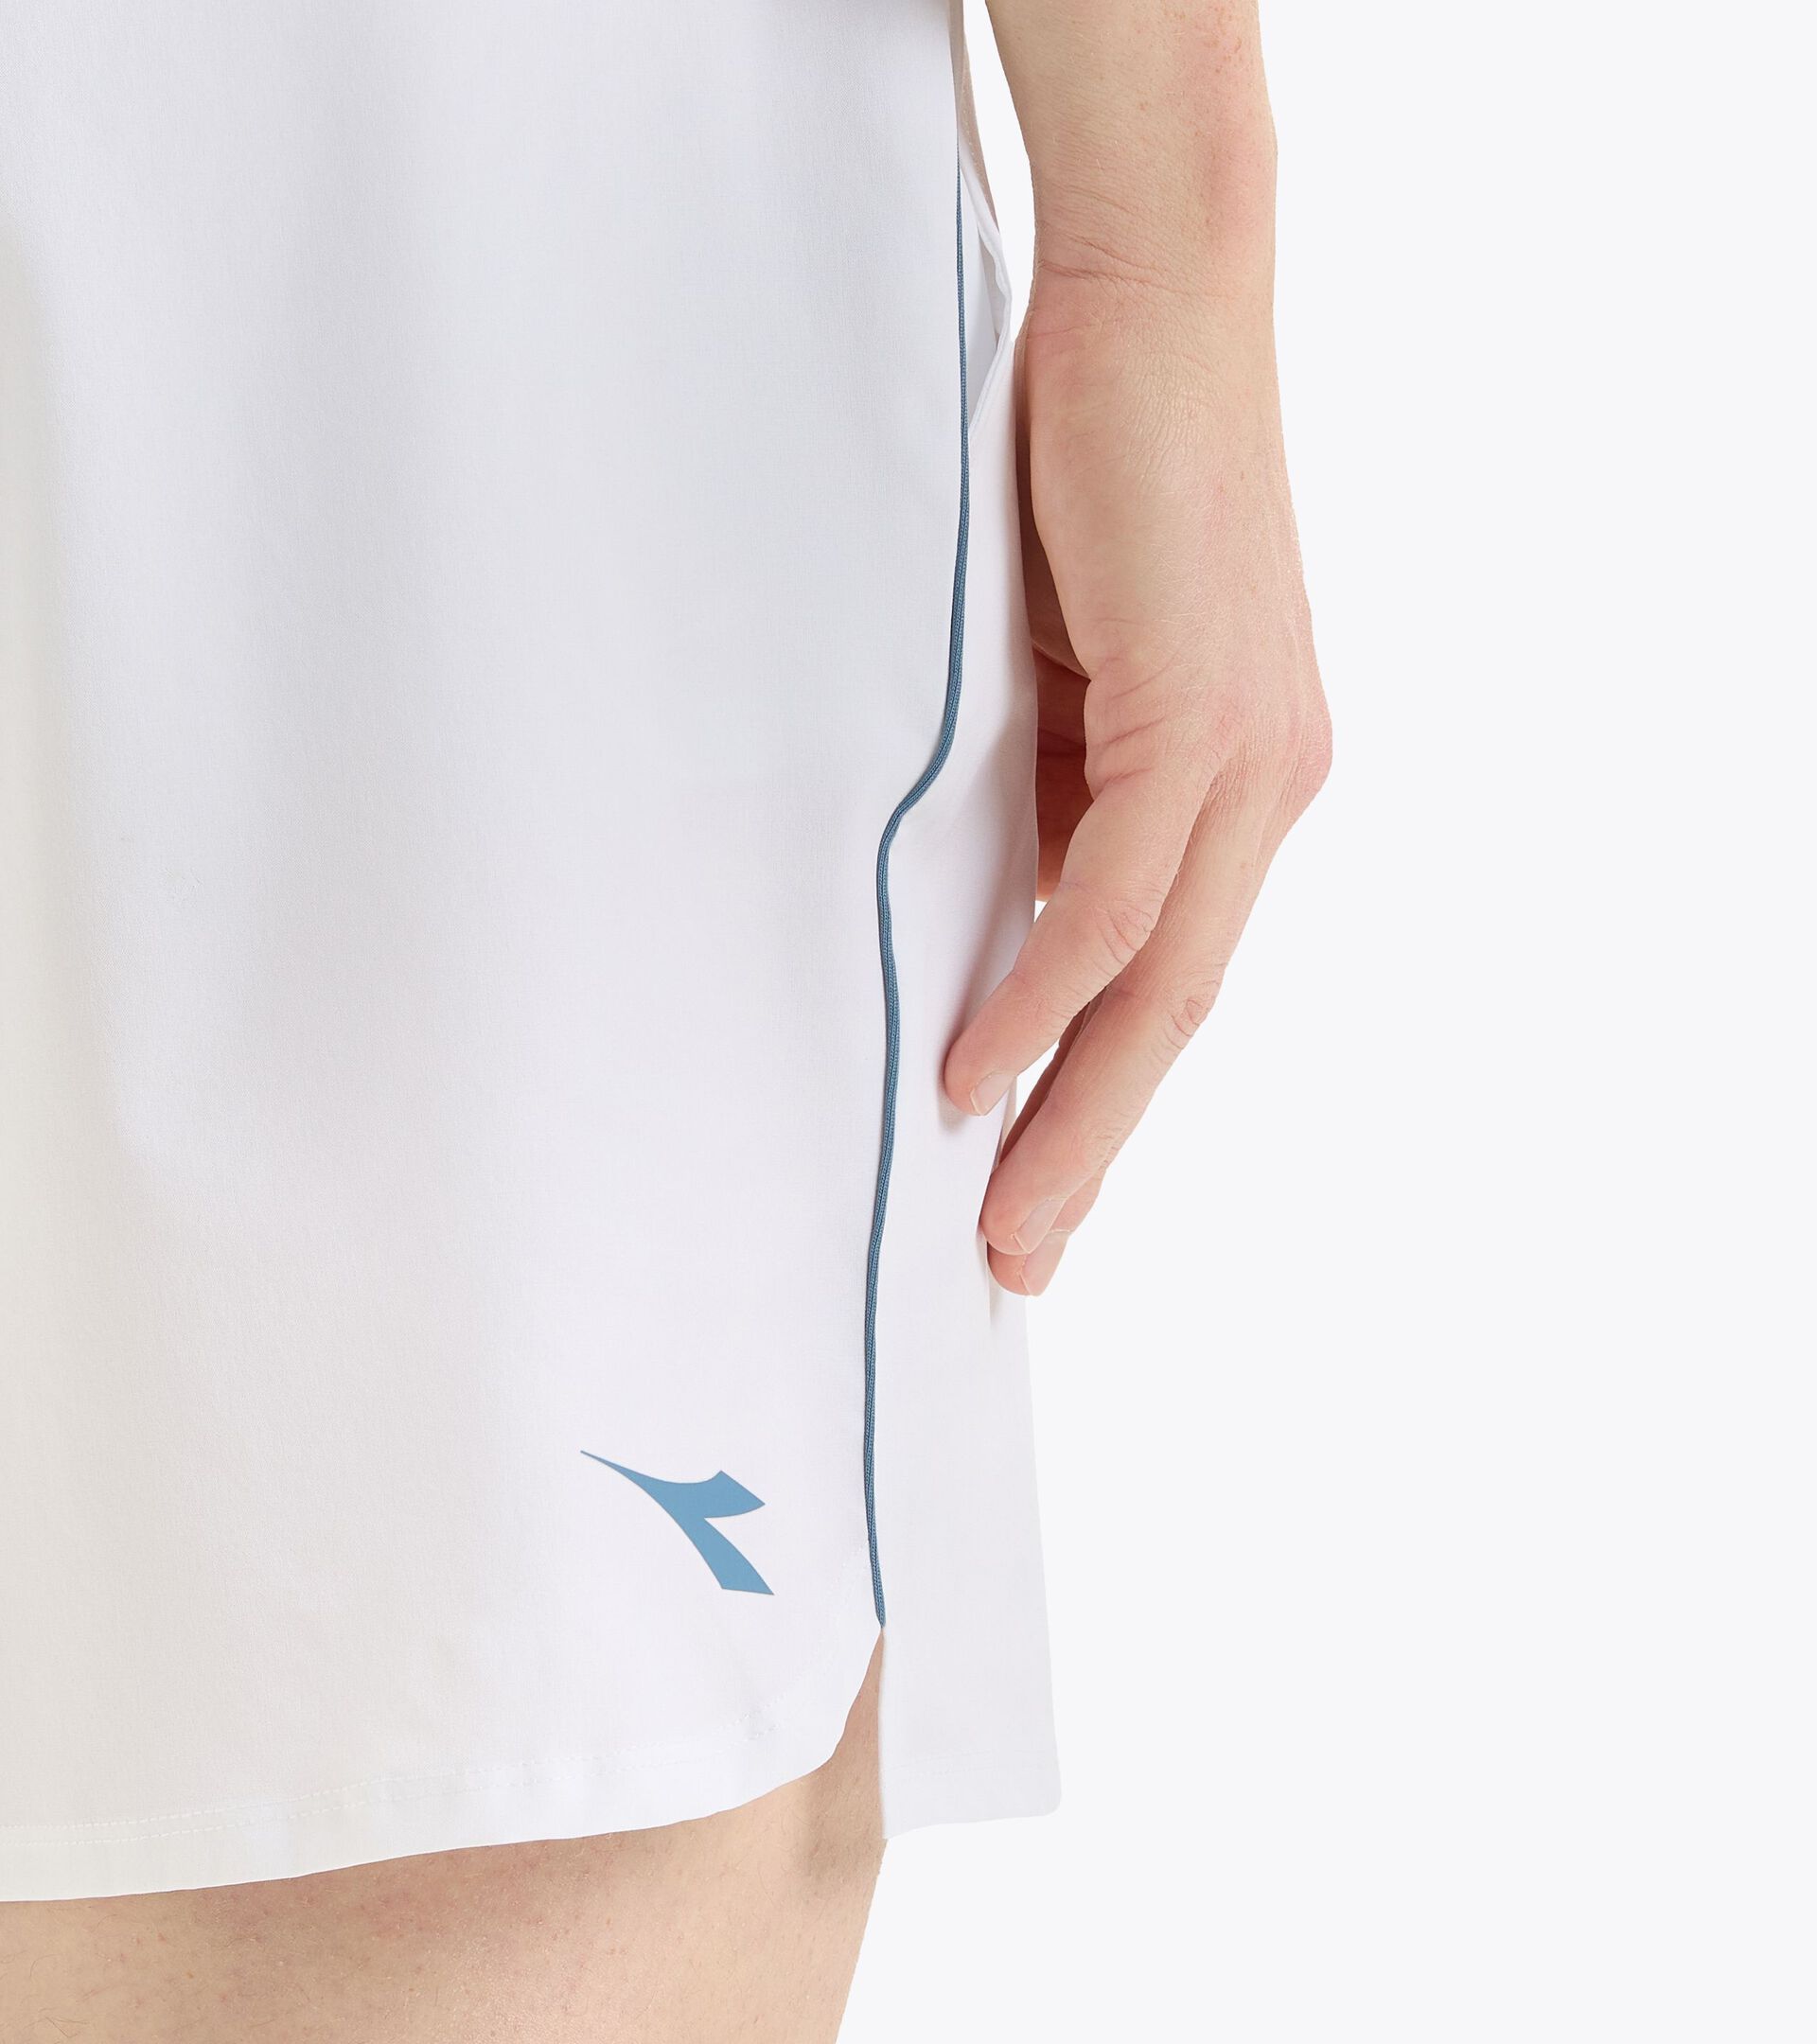 9’’ tennis shorts - Men’s
 SHORTS CORE 9" OPTICAL WHITE - Diadora